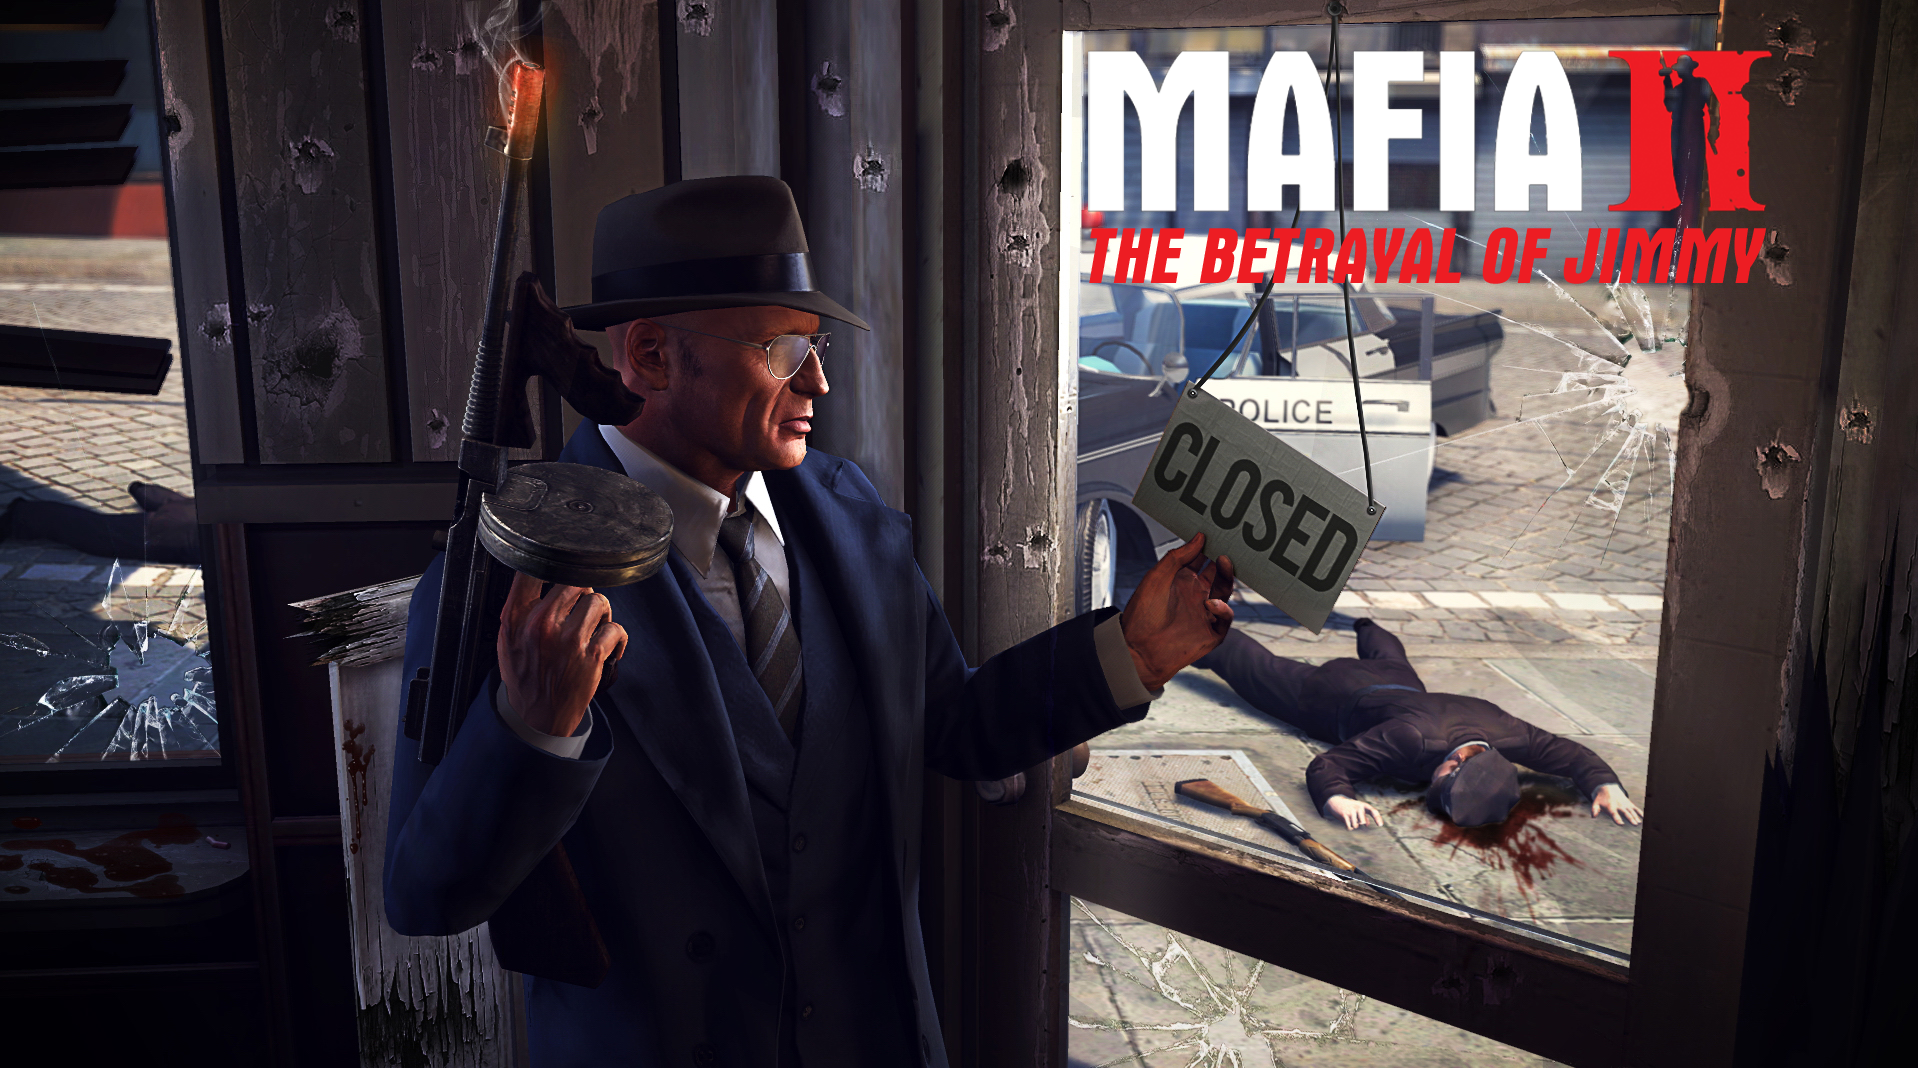 mafia 2 downloadables